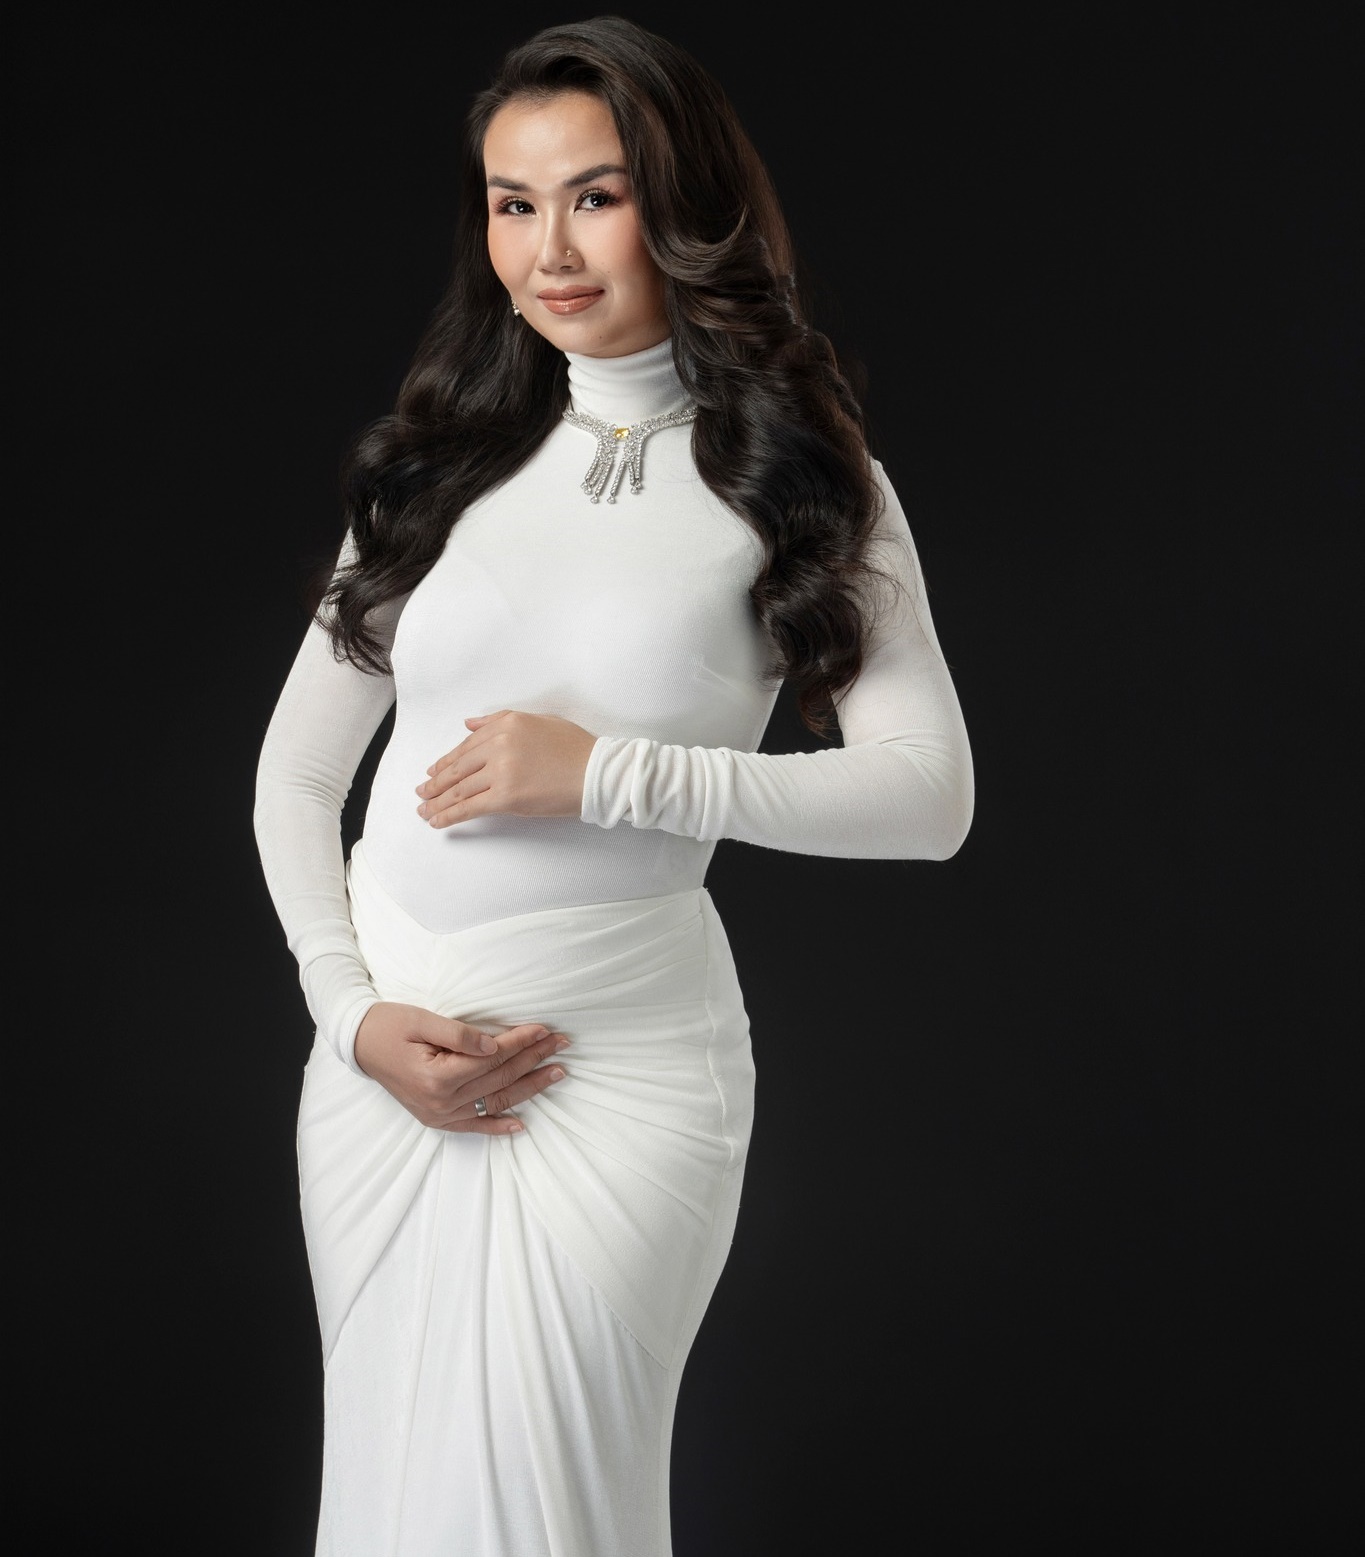 Võ Hạ Trâm hé lộ vóc dáng ở tháng thứ 4 thai kỳ, netizen đặc biệt chú ý một chi tiết ở bụng bầu - ảnh 6